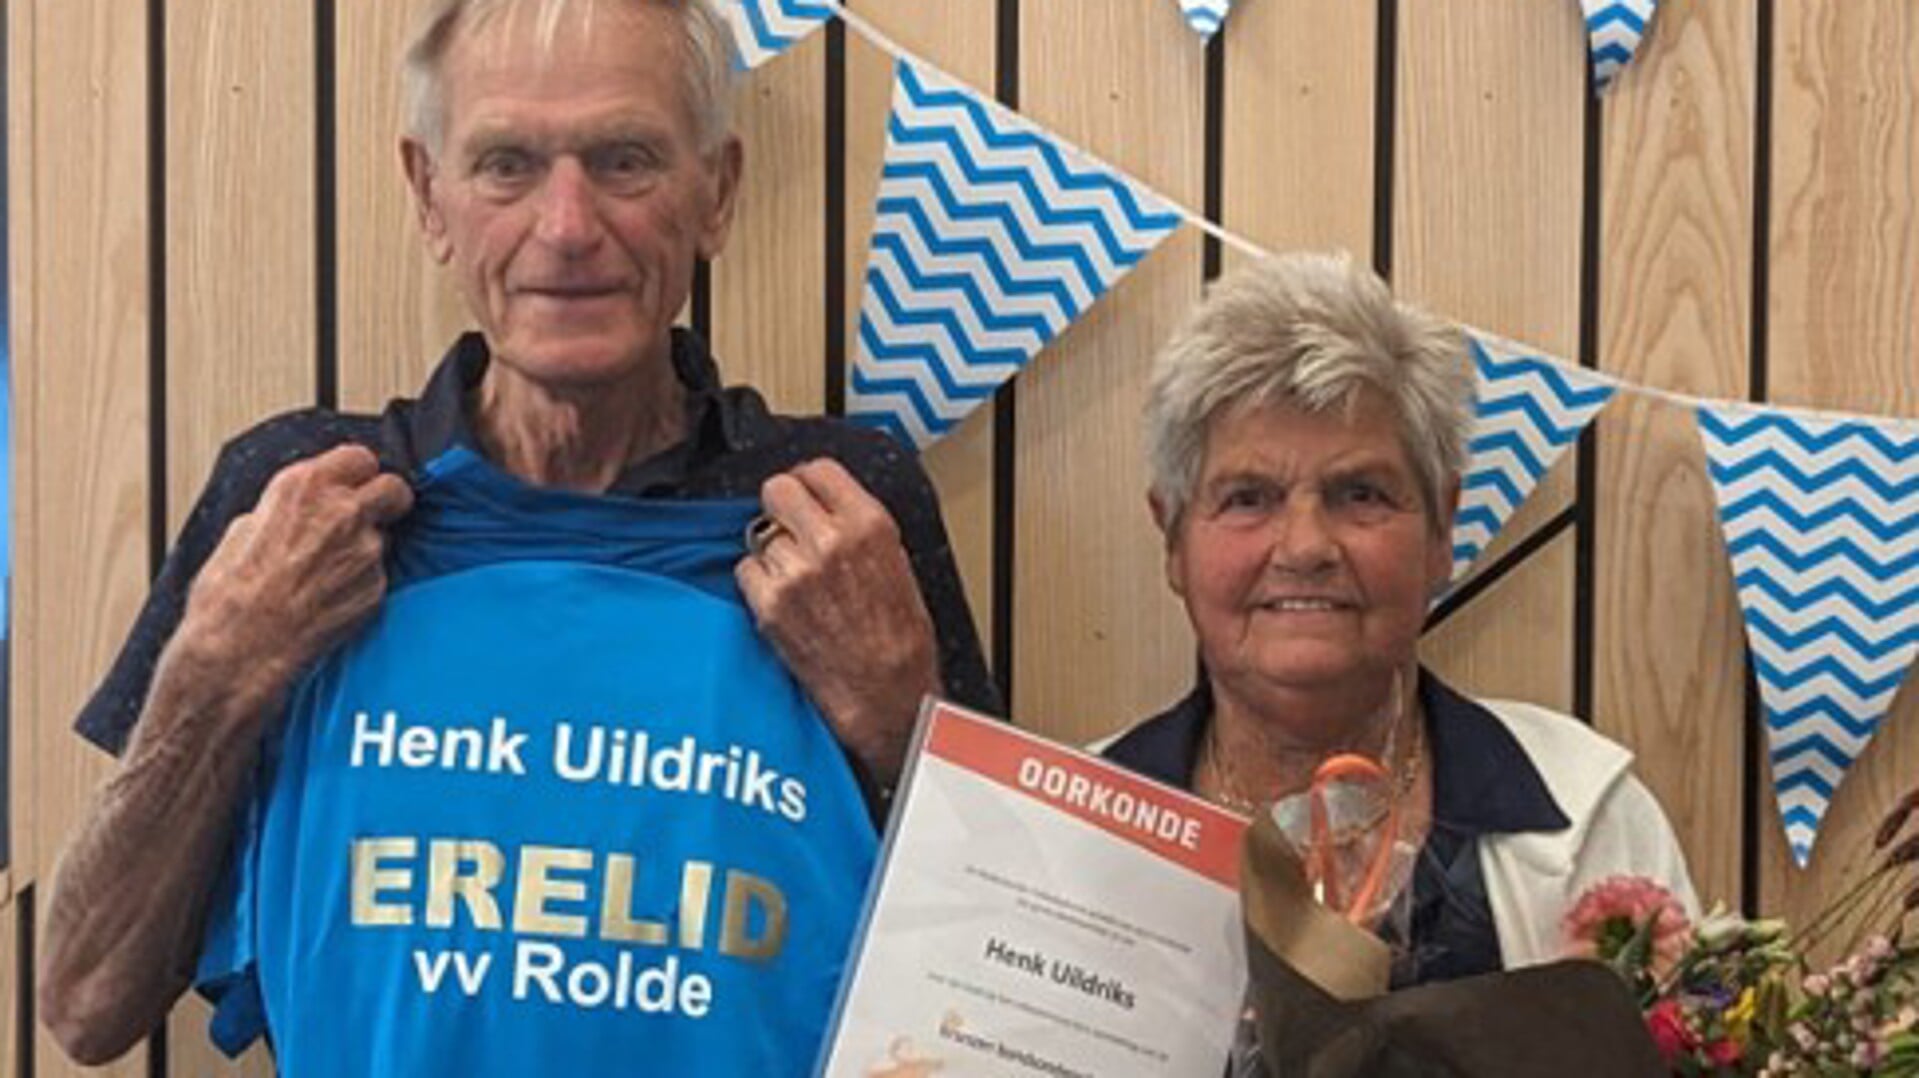 Henk Uildriks is benoemd tot erelid van volleybalvereniging Rolde. Hij werd samen met zijn vrouw Coby in het zonnetje gezet.